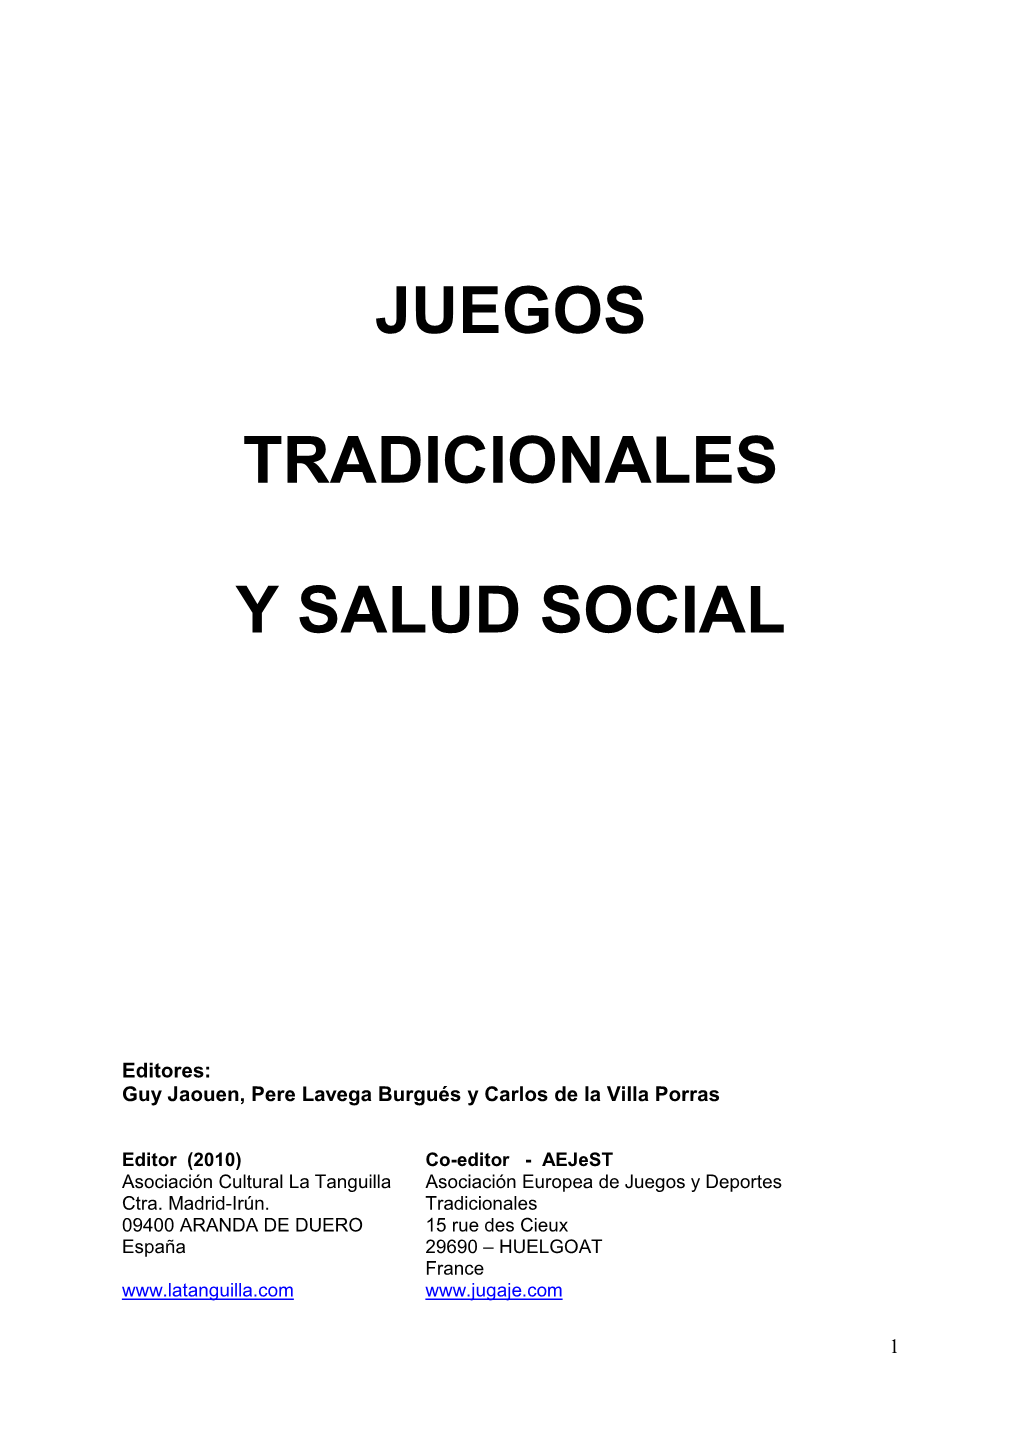 JDT Y Salud Social